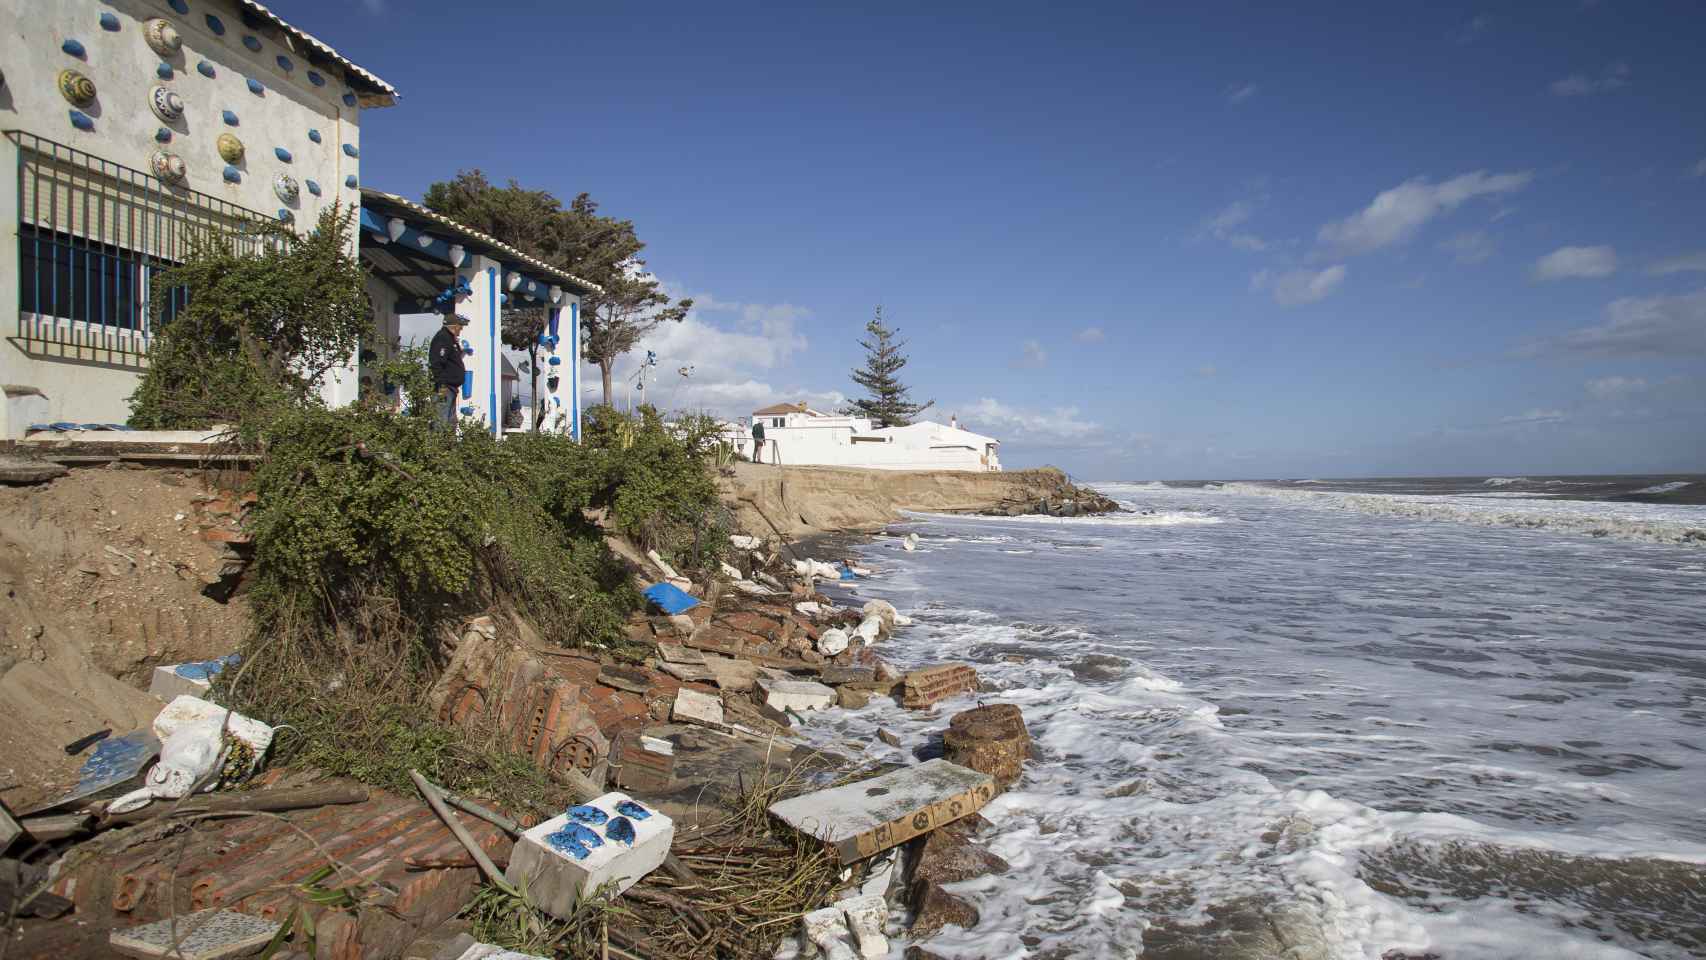 La casa de Raúl García en La Antilla, cuya playa aledaña ha desaparecido quedando el inmueble a merced de la marea.